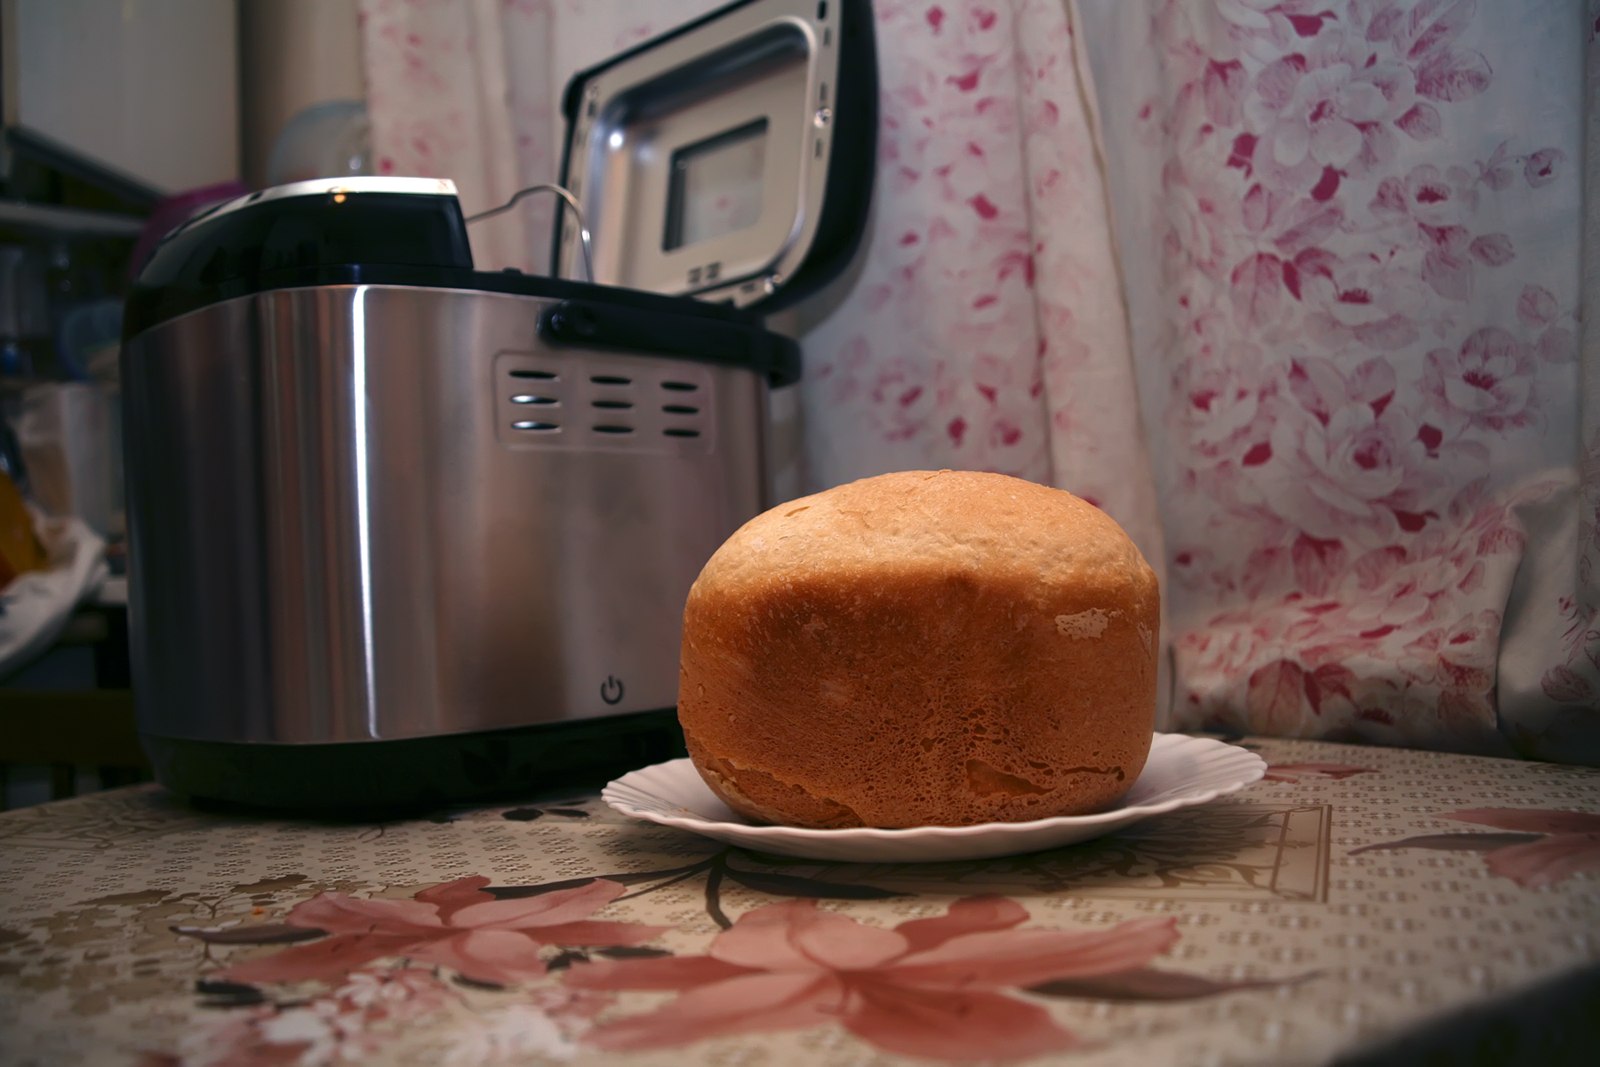 Видео печь хлеб. Хлеб в хлебопечке. Хлеб из хлебопечки. Выпекание хлеба в хлебопечке. Домашний хлеб в хлебопечке.